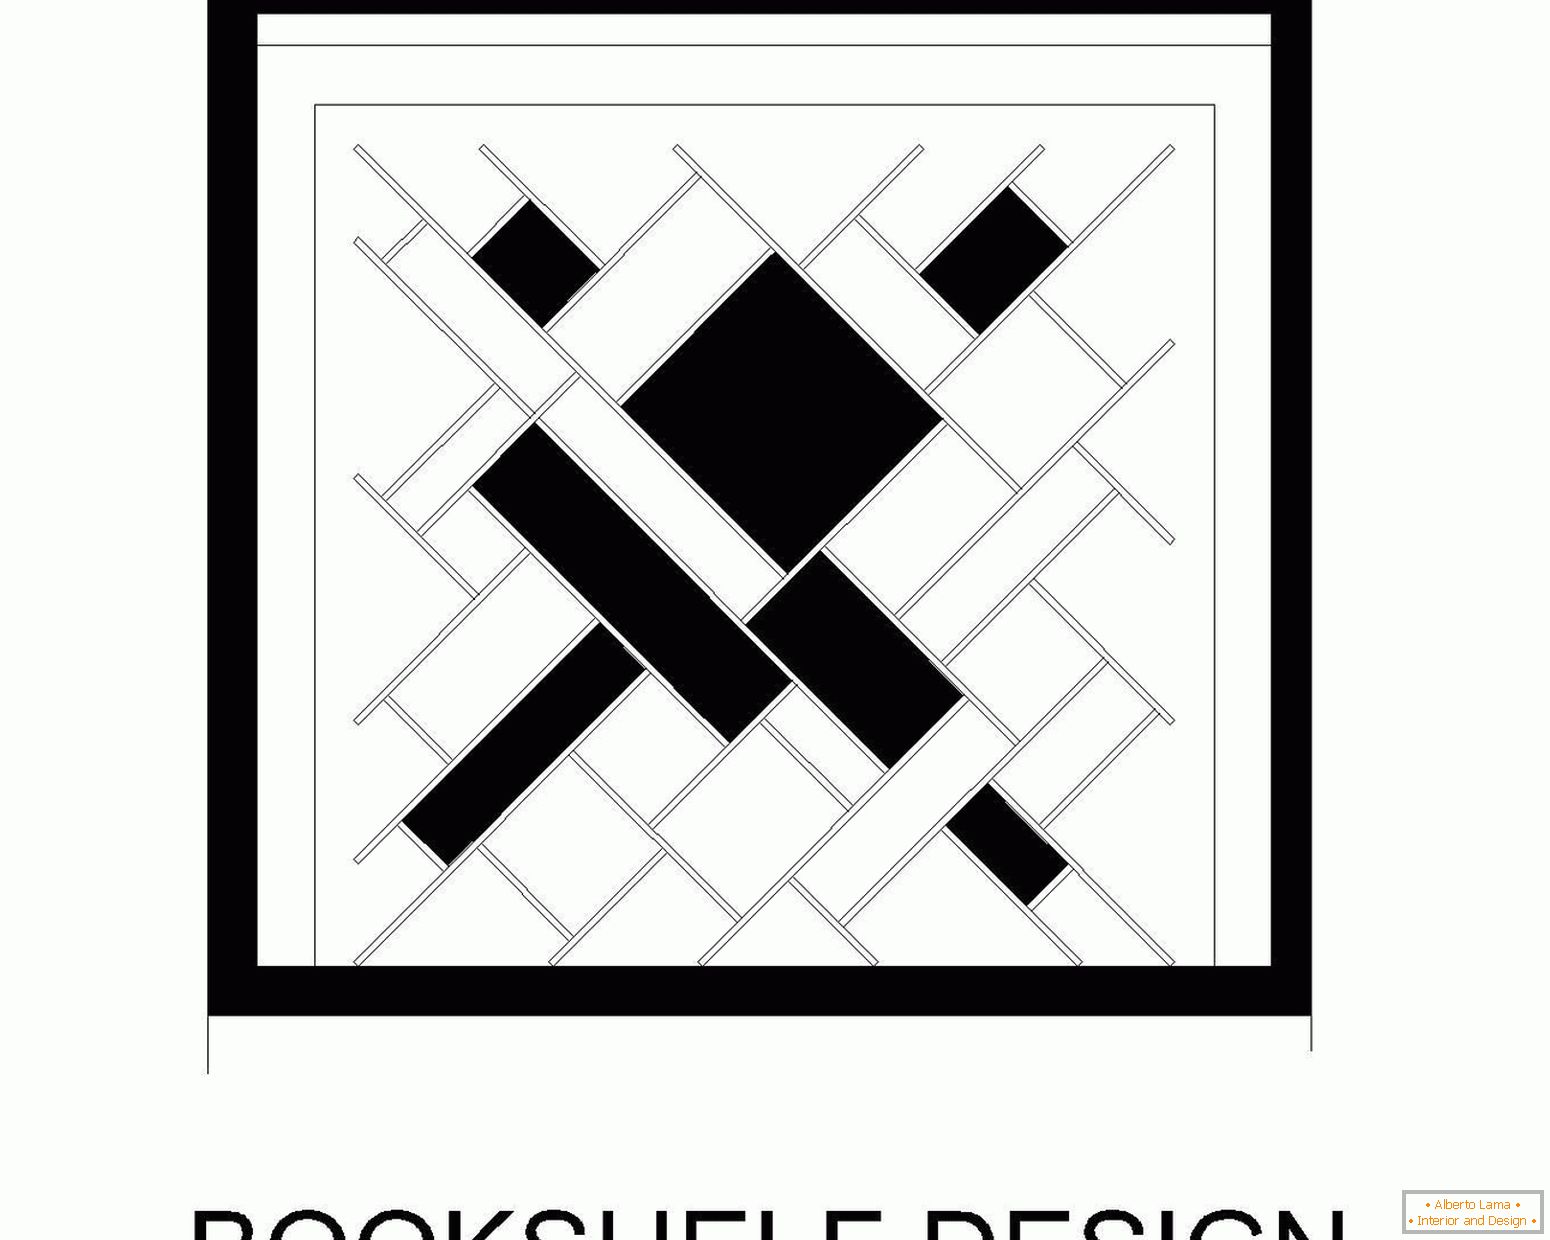 Design of a bookcase